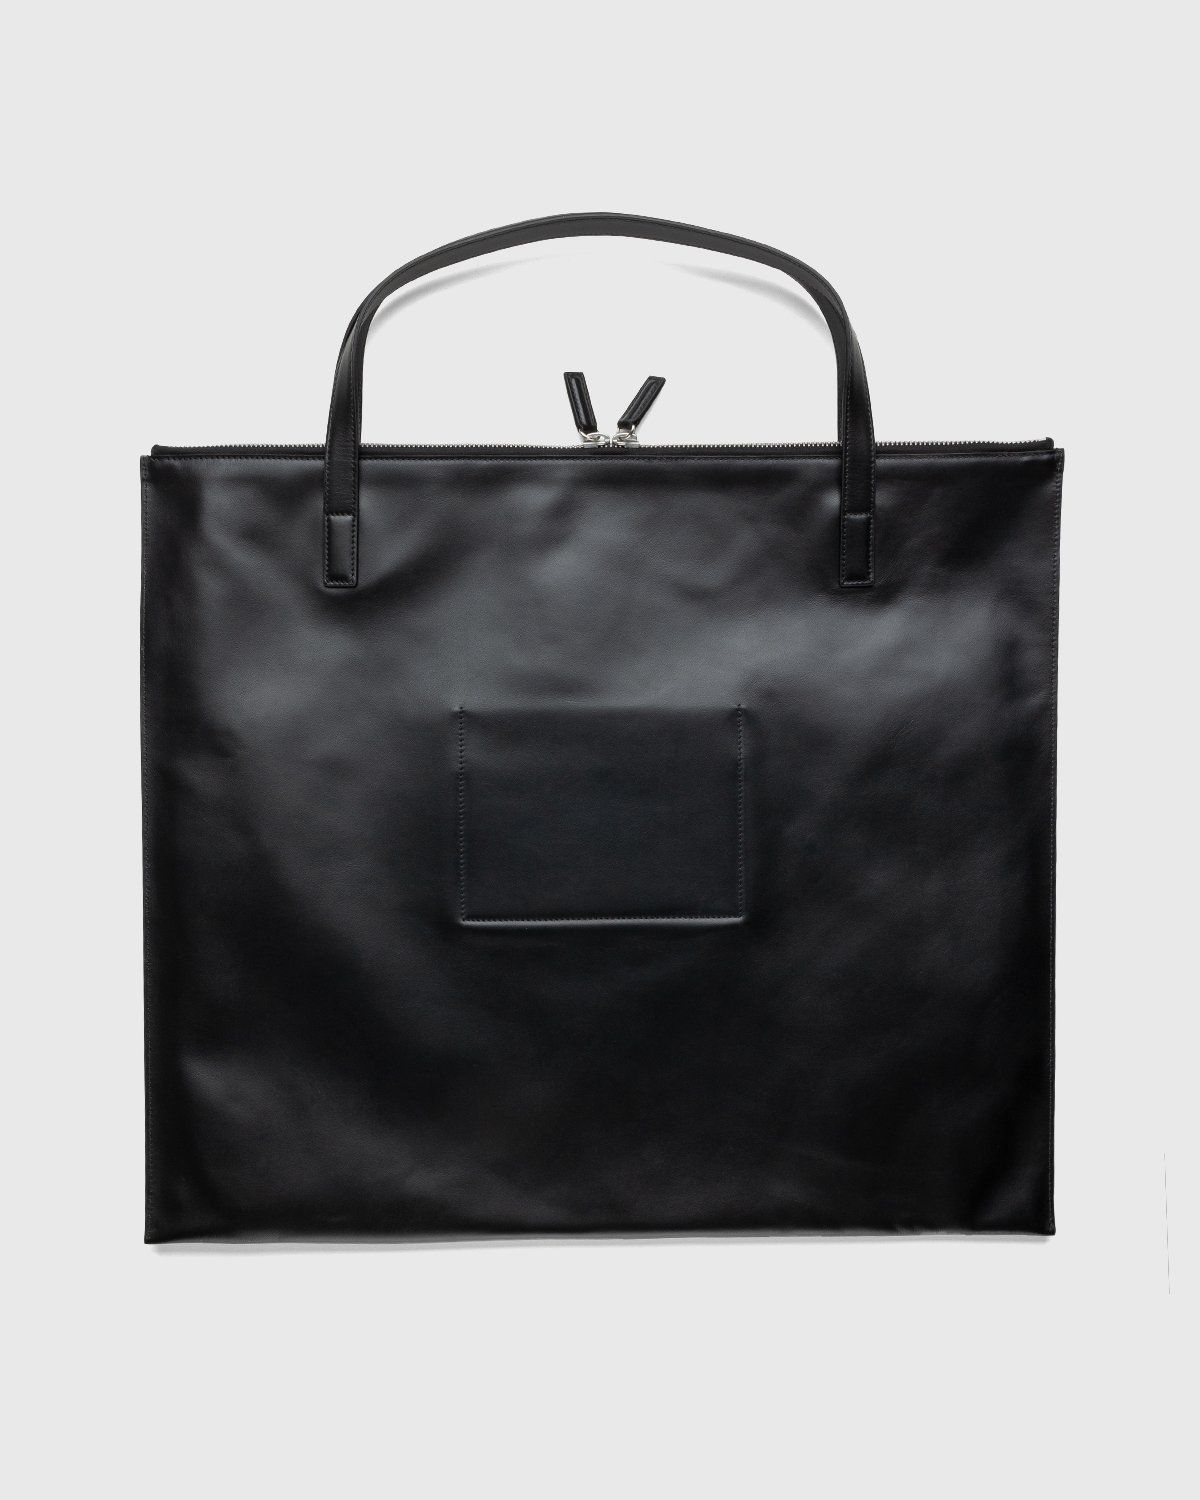 Jil Sander – Zip Tote Medium Black - Tote Bags - Black - Image 2